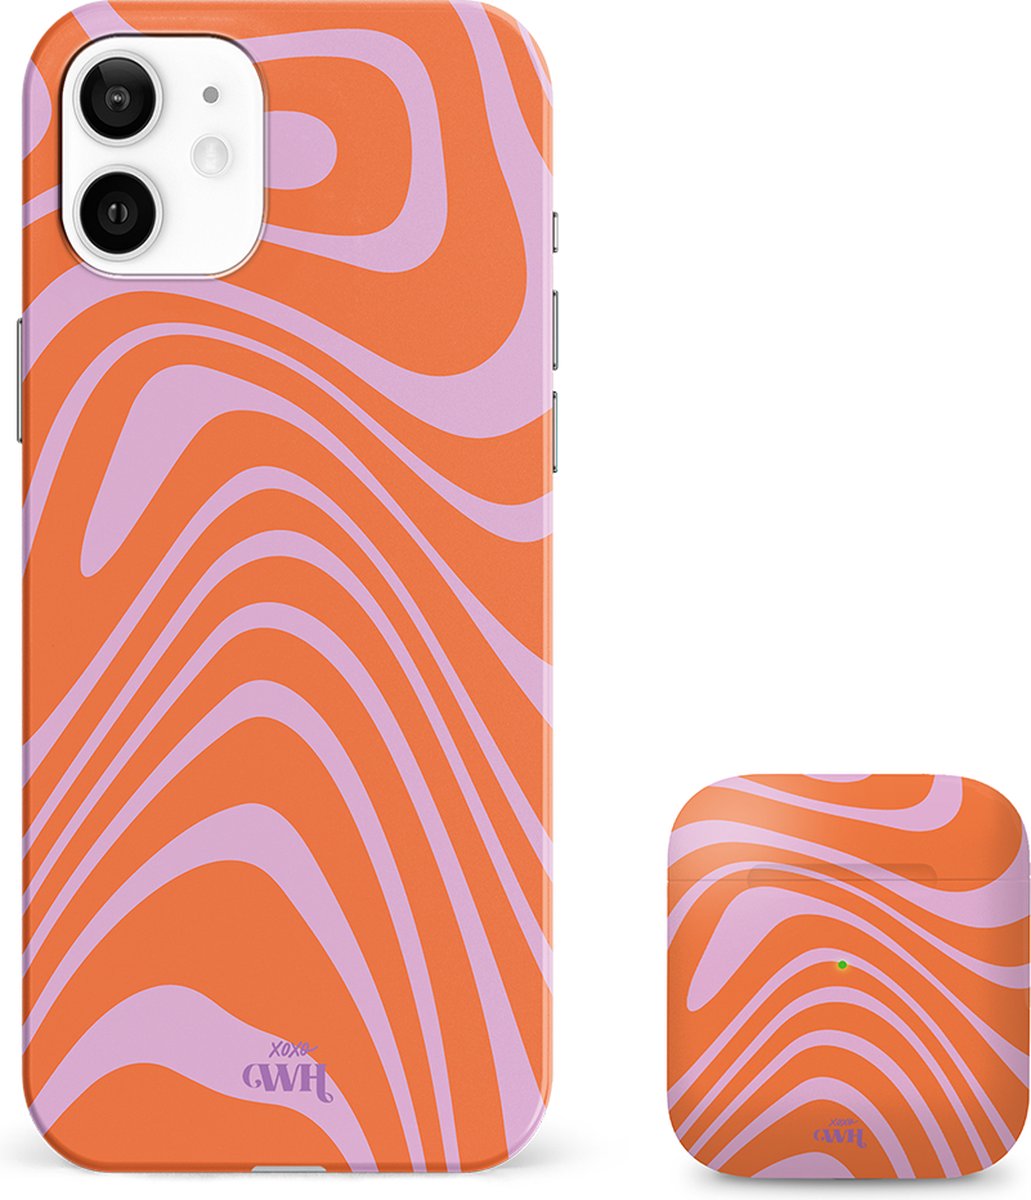 xoxo Wildhearts siliconen hoesje + AirPods 1/2 hoesje - Geschikt voor iPhone 12 en AirPods 1 en 2 - Boogie Wonderland Orange - Single layer telefoonhoesje - Oranje - Roze - Hoesje met print